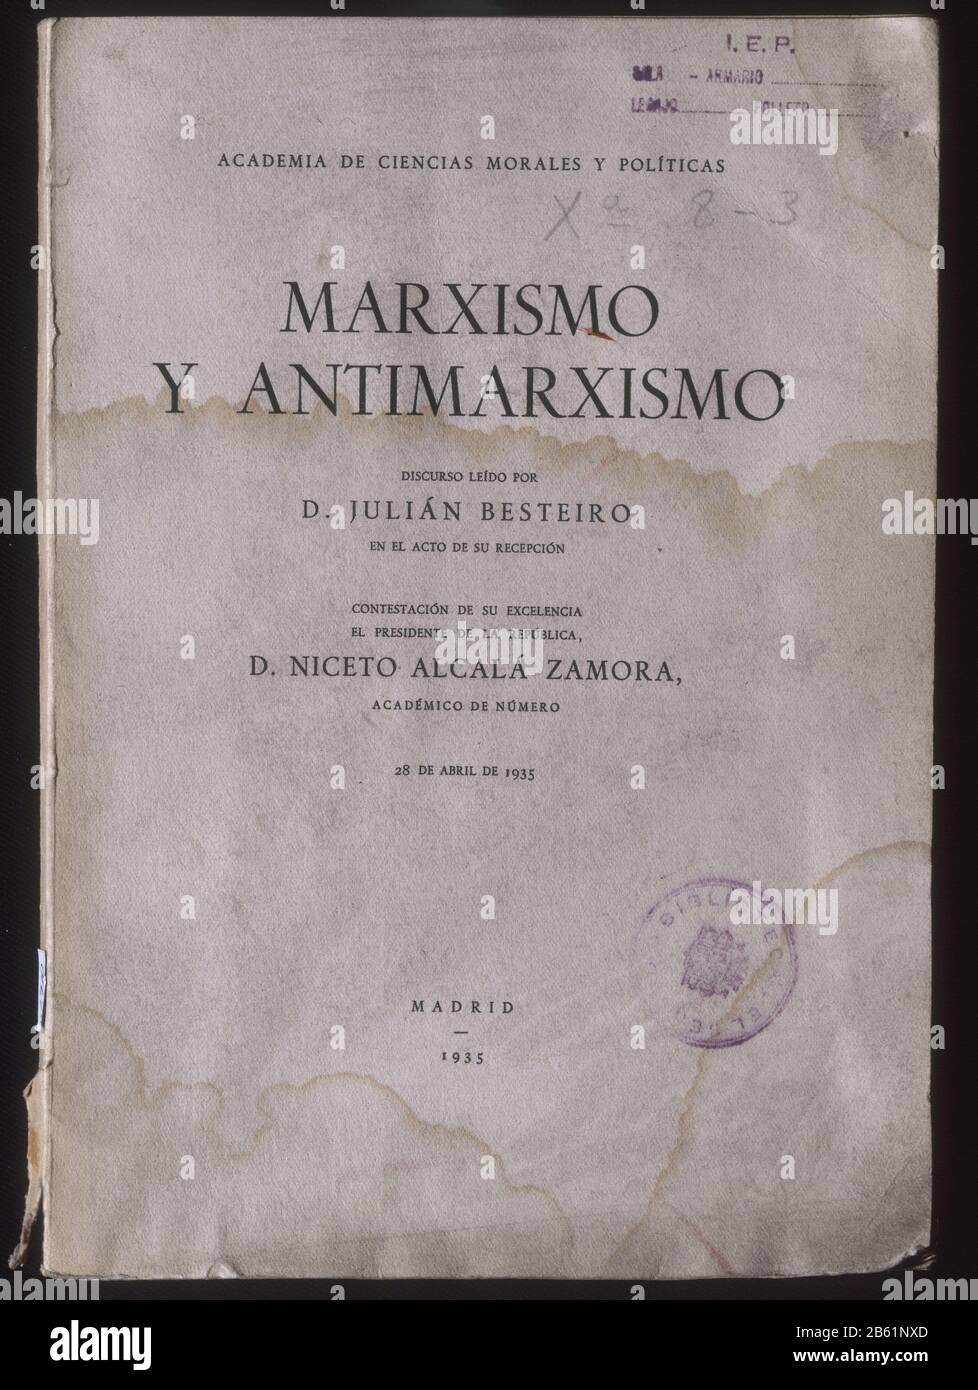 MARXISMO Y ANTIMARXISMO - 1935. Author: BESTEIRO JULIAN. Location: SENADO-BIBLIOTECA-COLECCION. MADRID. SPAIN. Stock Photo